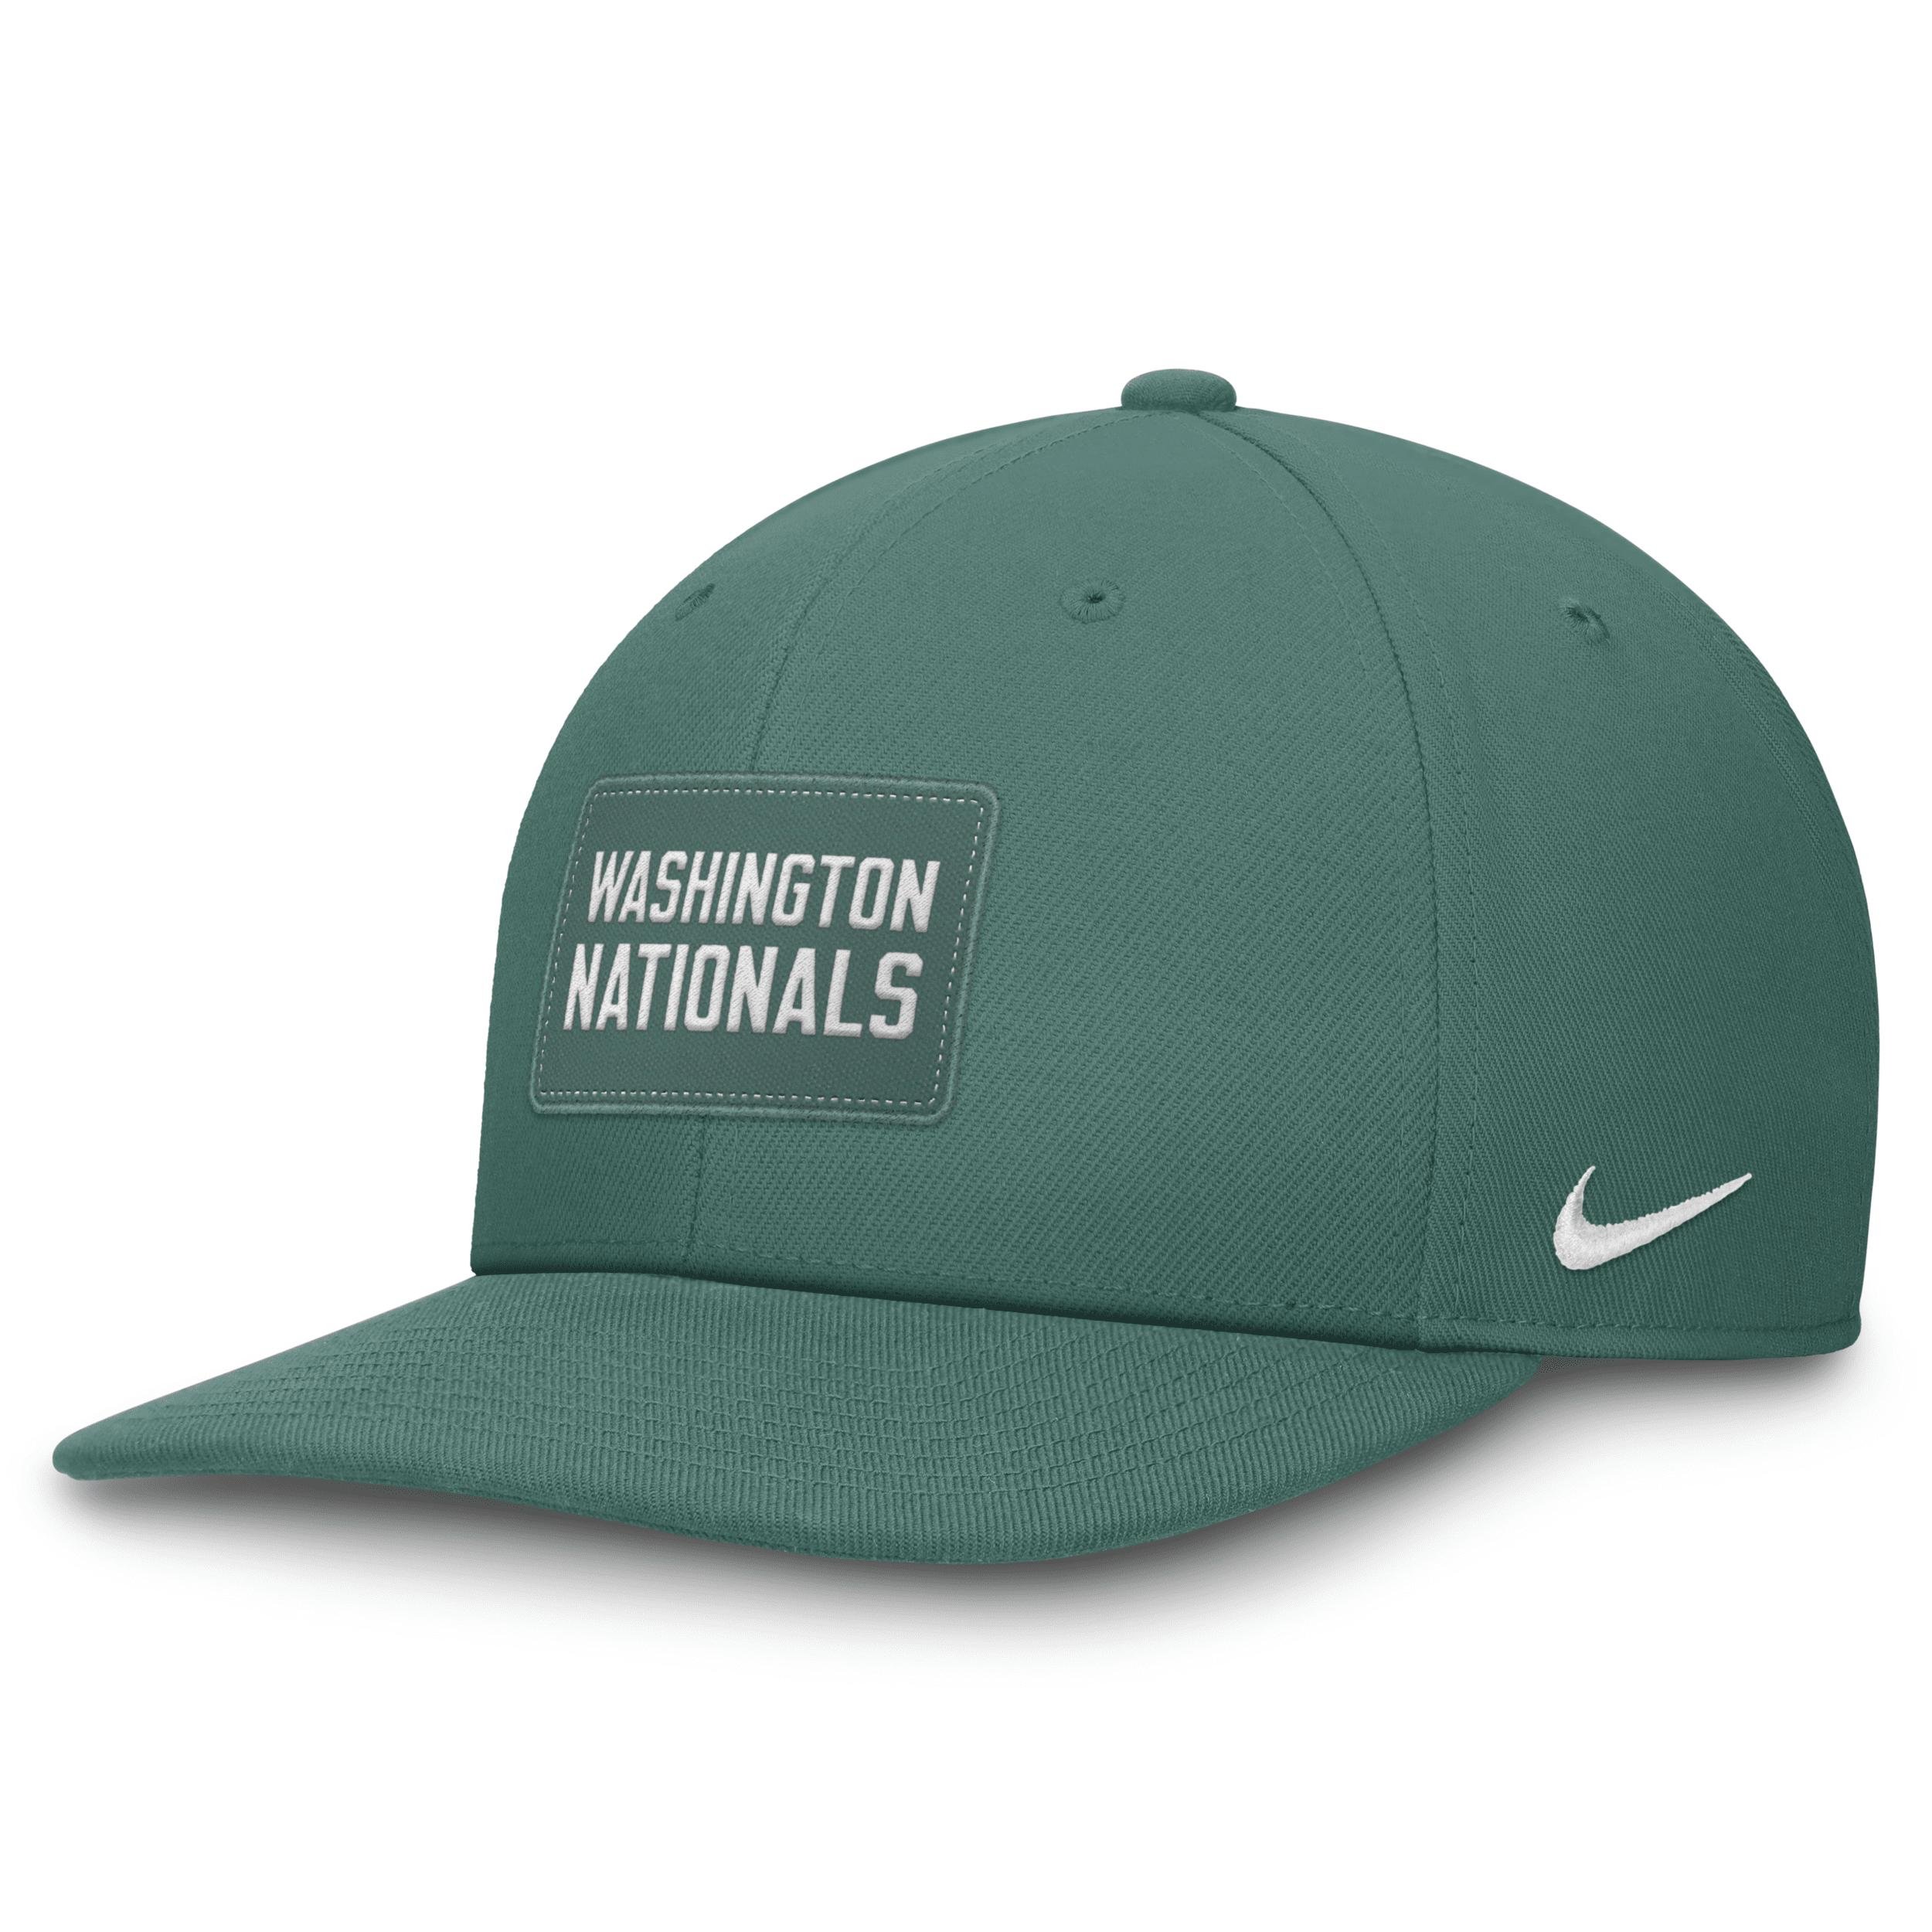 Washington Nationals Bicoastal Pro Nike Unisex Dri-FIT MLB Adjustable Hat by NIKE